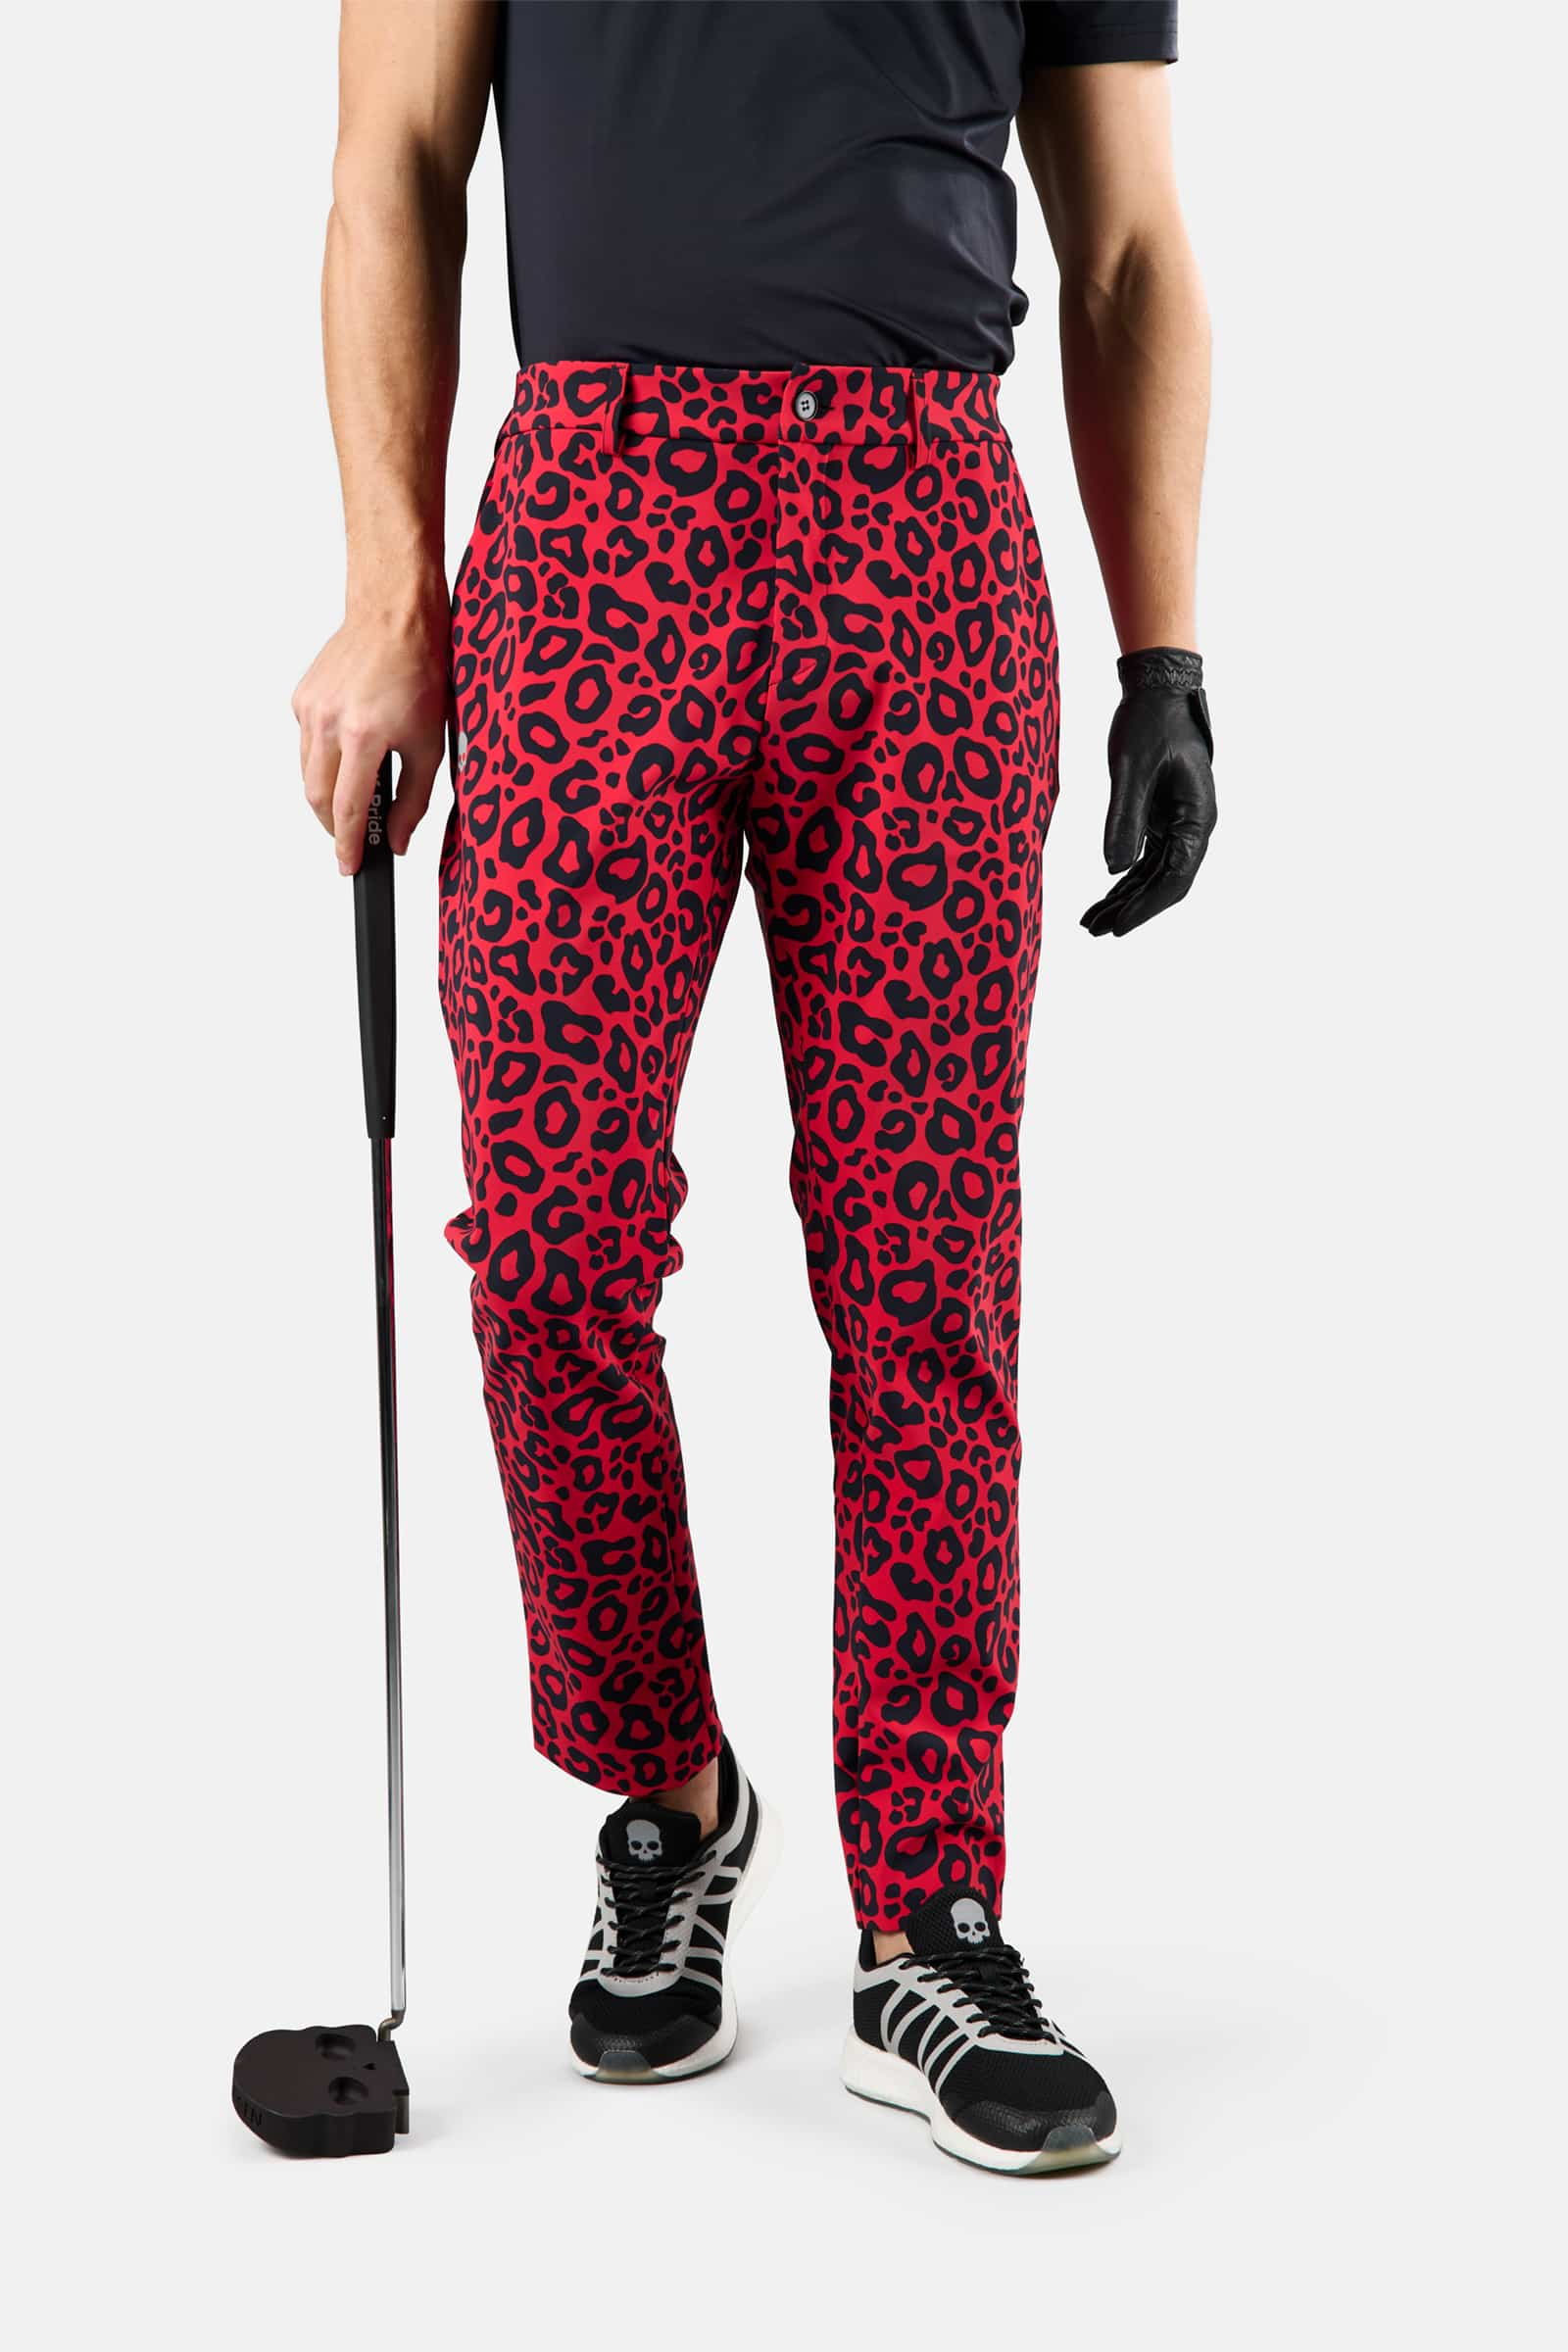 Pantaloni invernali da golf - Abbigliamento - Abbigliamento sportivo | Hydrogen